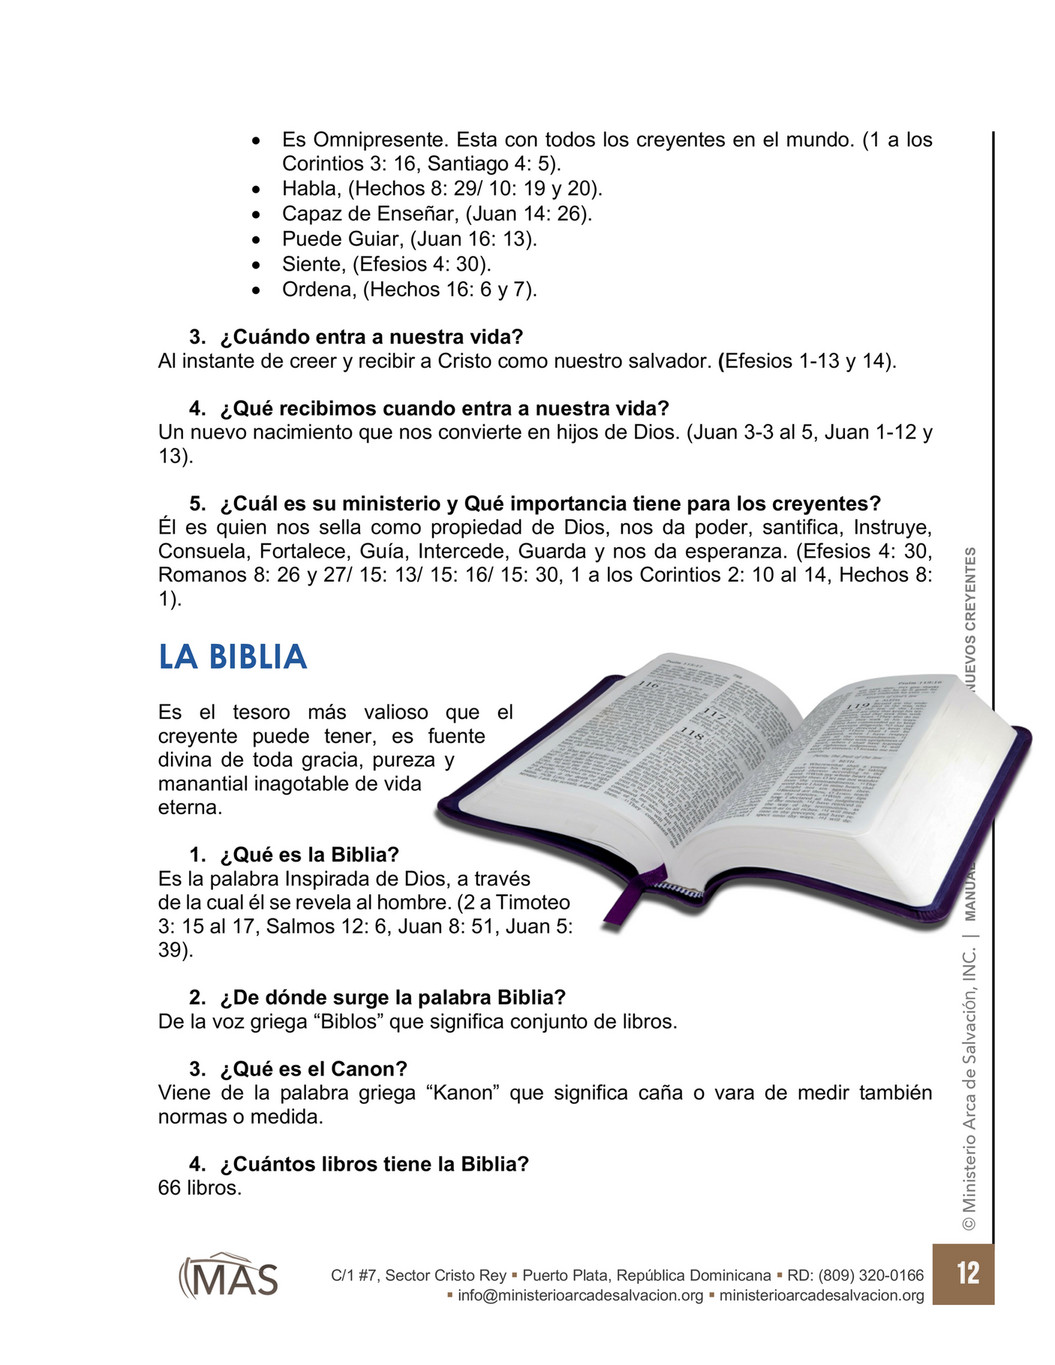 Arca De Salvacion Radio Manual Nuevo Creyente Pagina 12 Created With Publitas Com